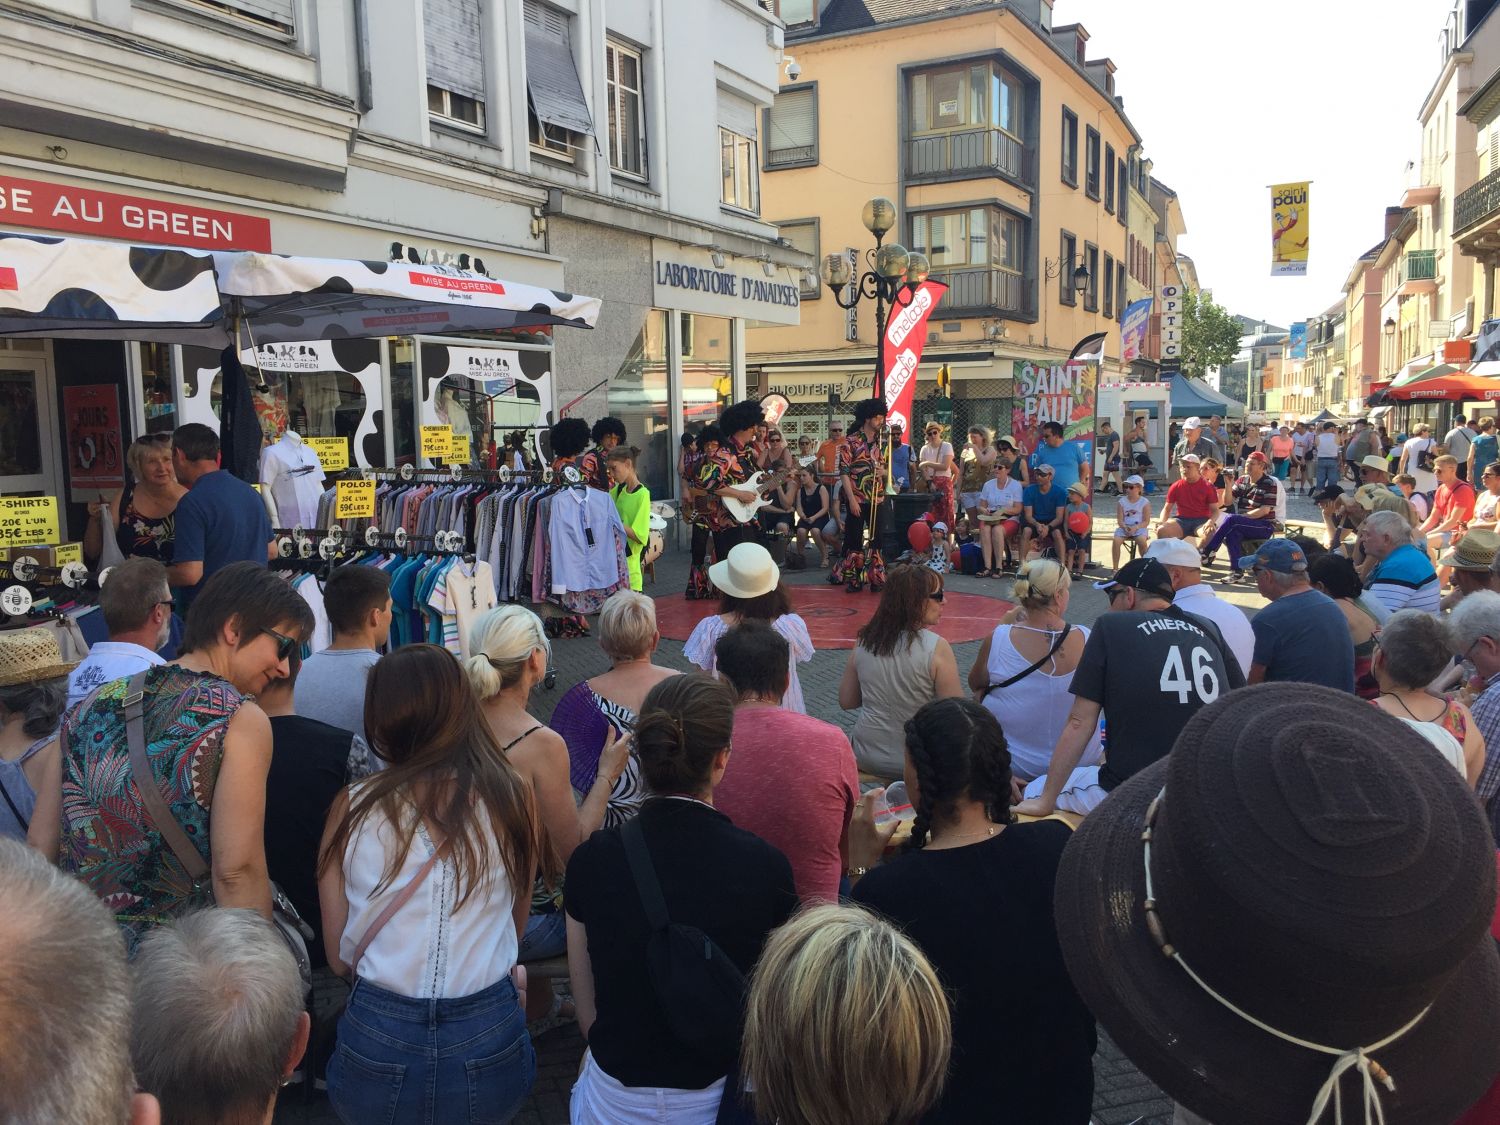 Le festival de la Saint-Paul revient dans les rues du centre-ville à Sarreguemines <br />
les 24,25 et 26 juin 